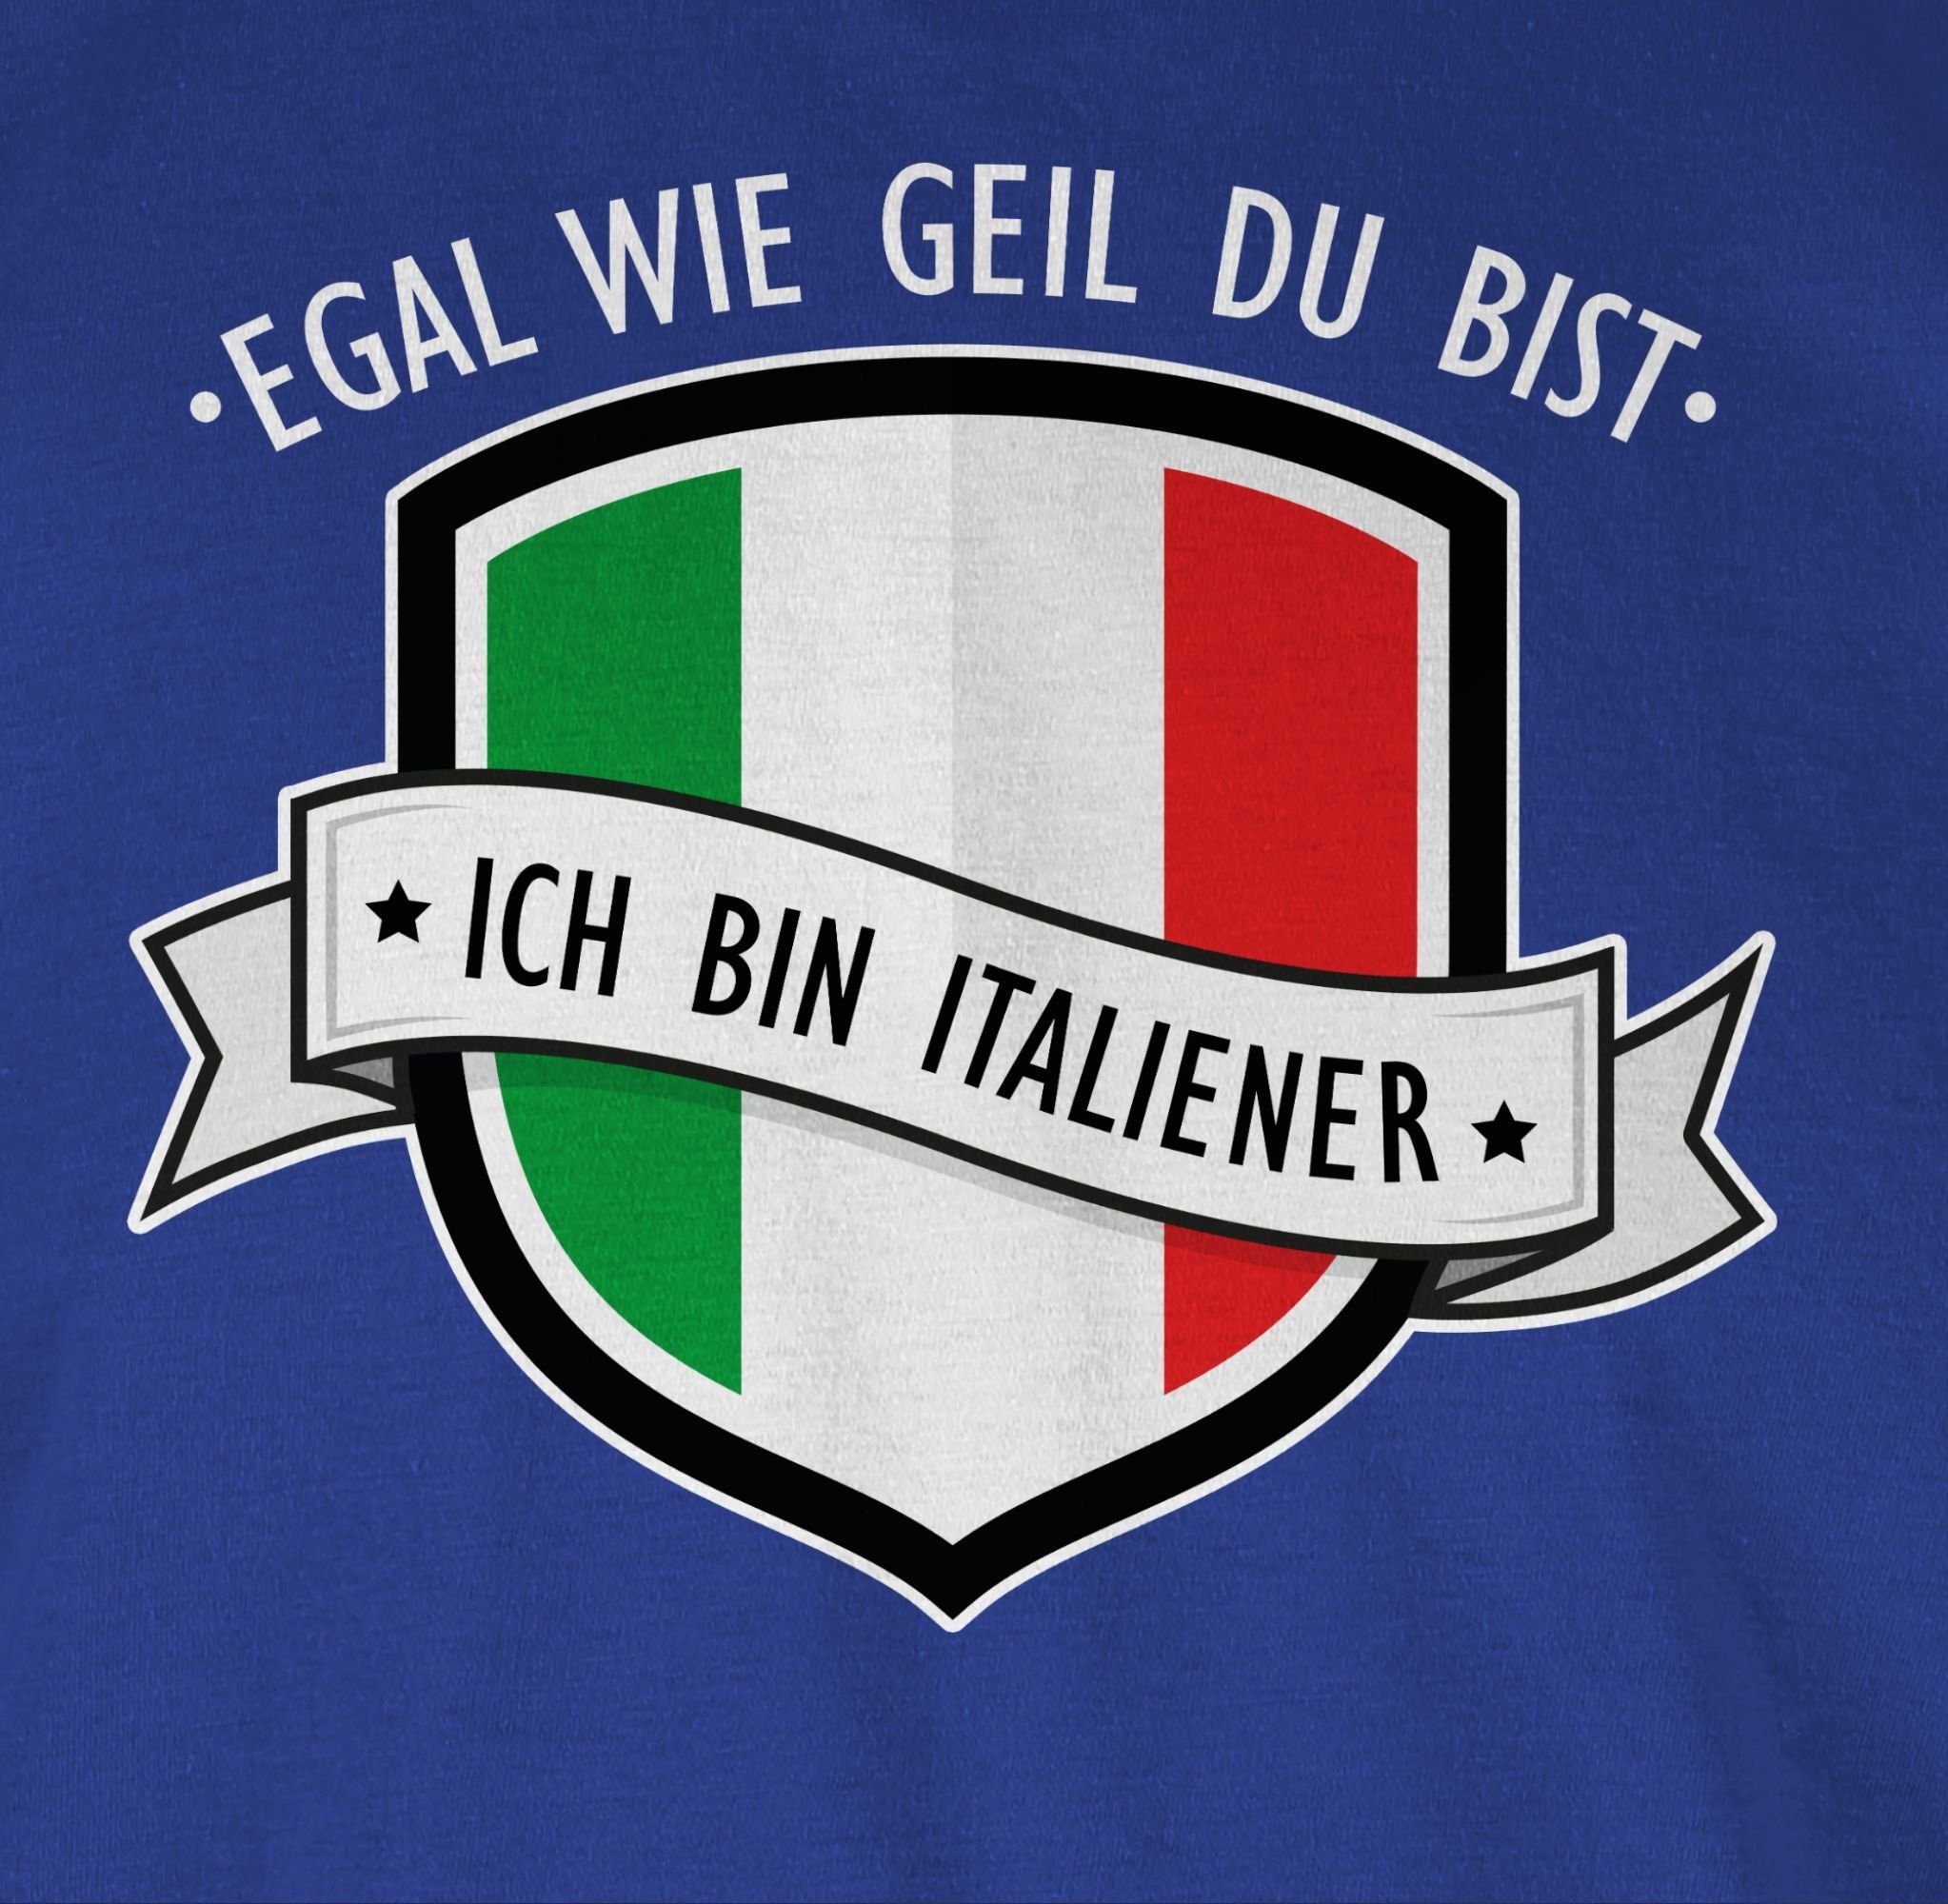 Shirtracer T-Shirt Egal 2 Italiener bist geil Royalblau Wappen Länder bin - wie du ich